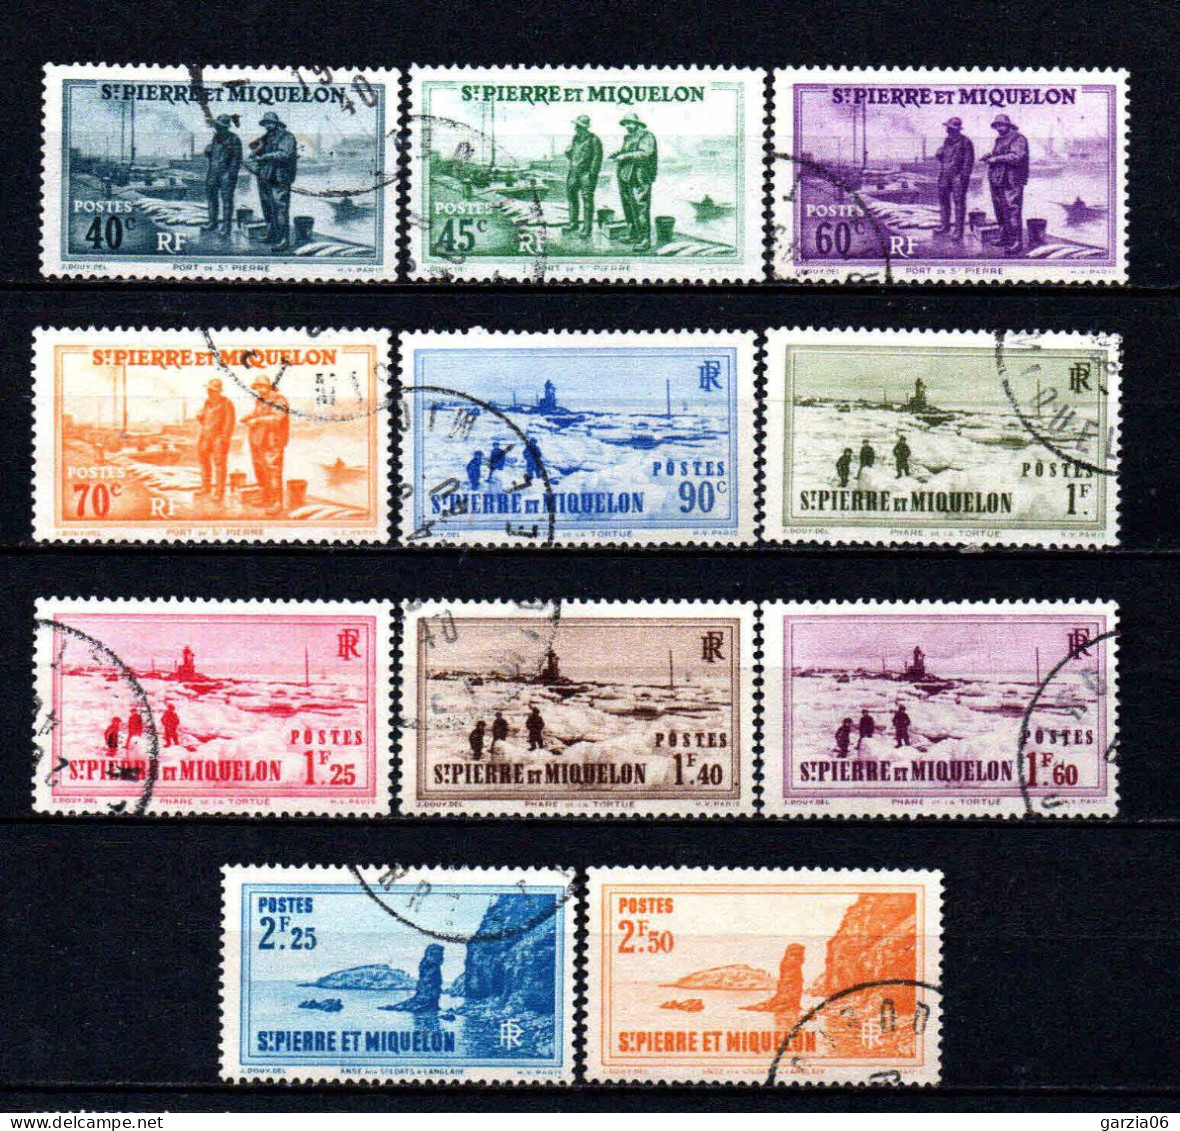 St Pierre Et Miquelon    - 1939 - Nouvelles Valeurs    - N° 196 à 206   - Oblit - Used - Used Stamps